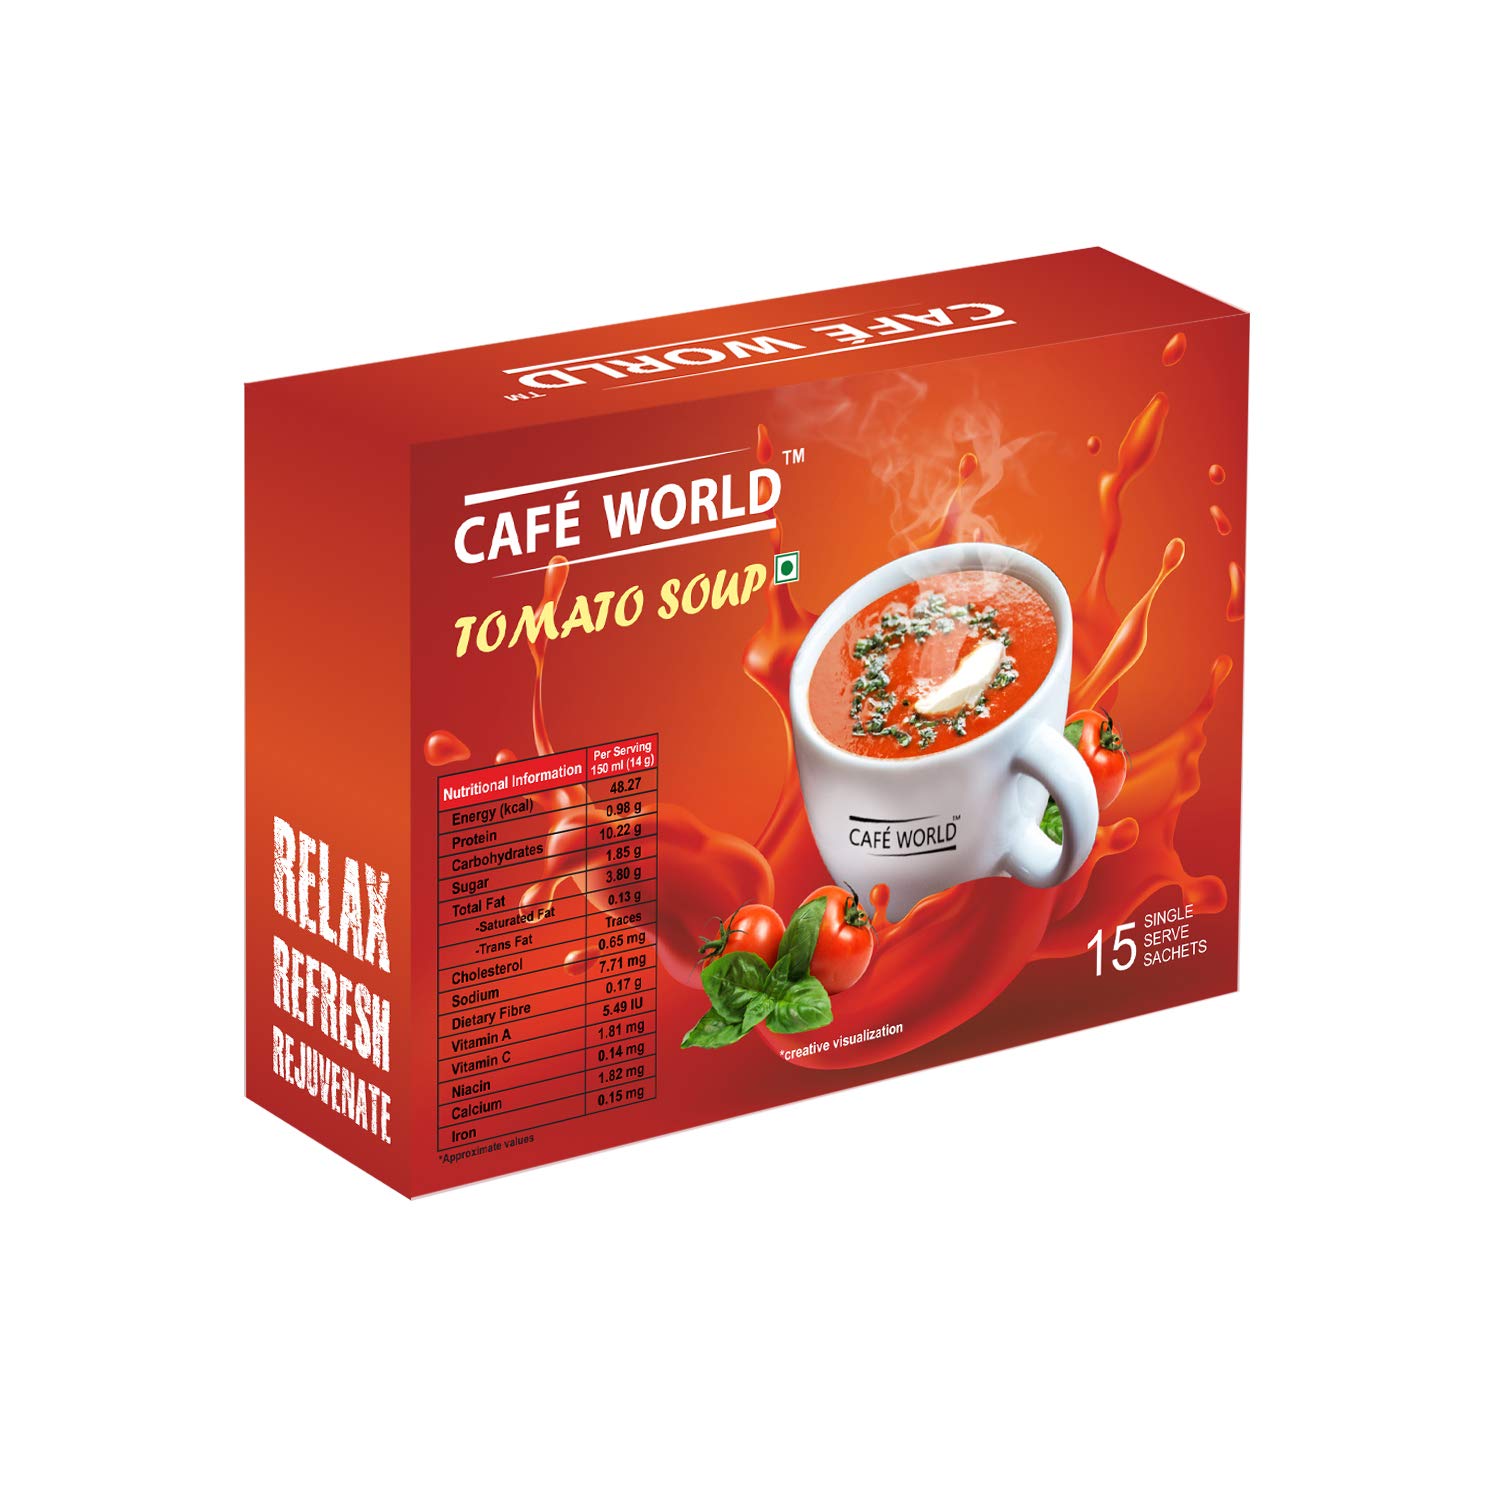 Cafe World Tomato Soup Image